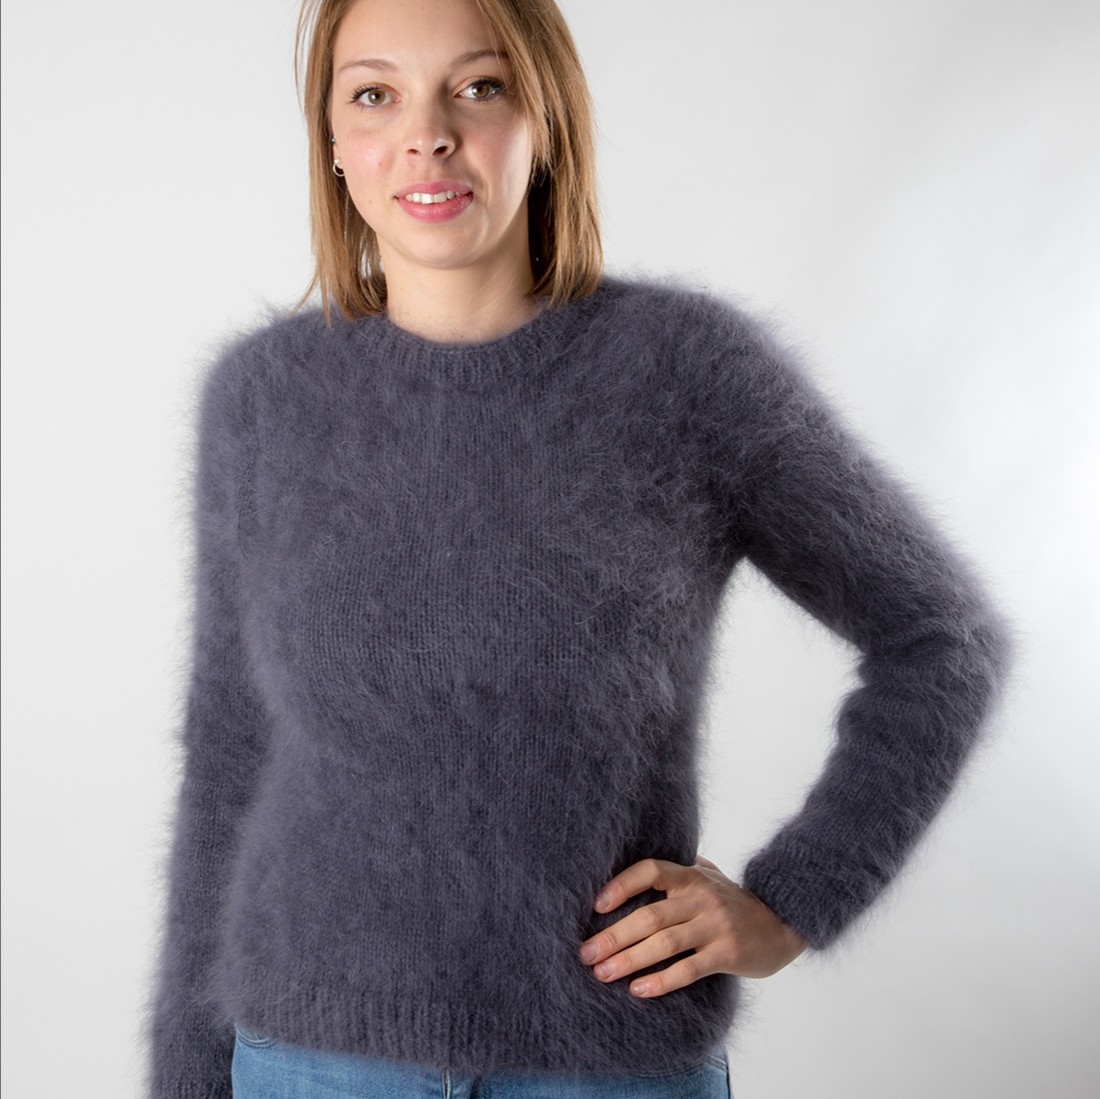 Cagoule Eliott tricot bleu chataigne100% laine